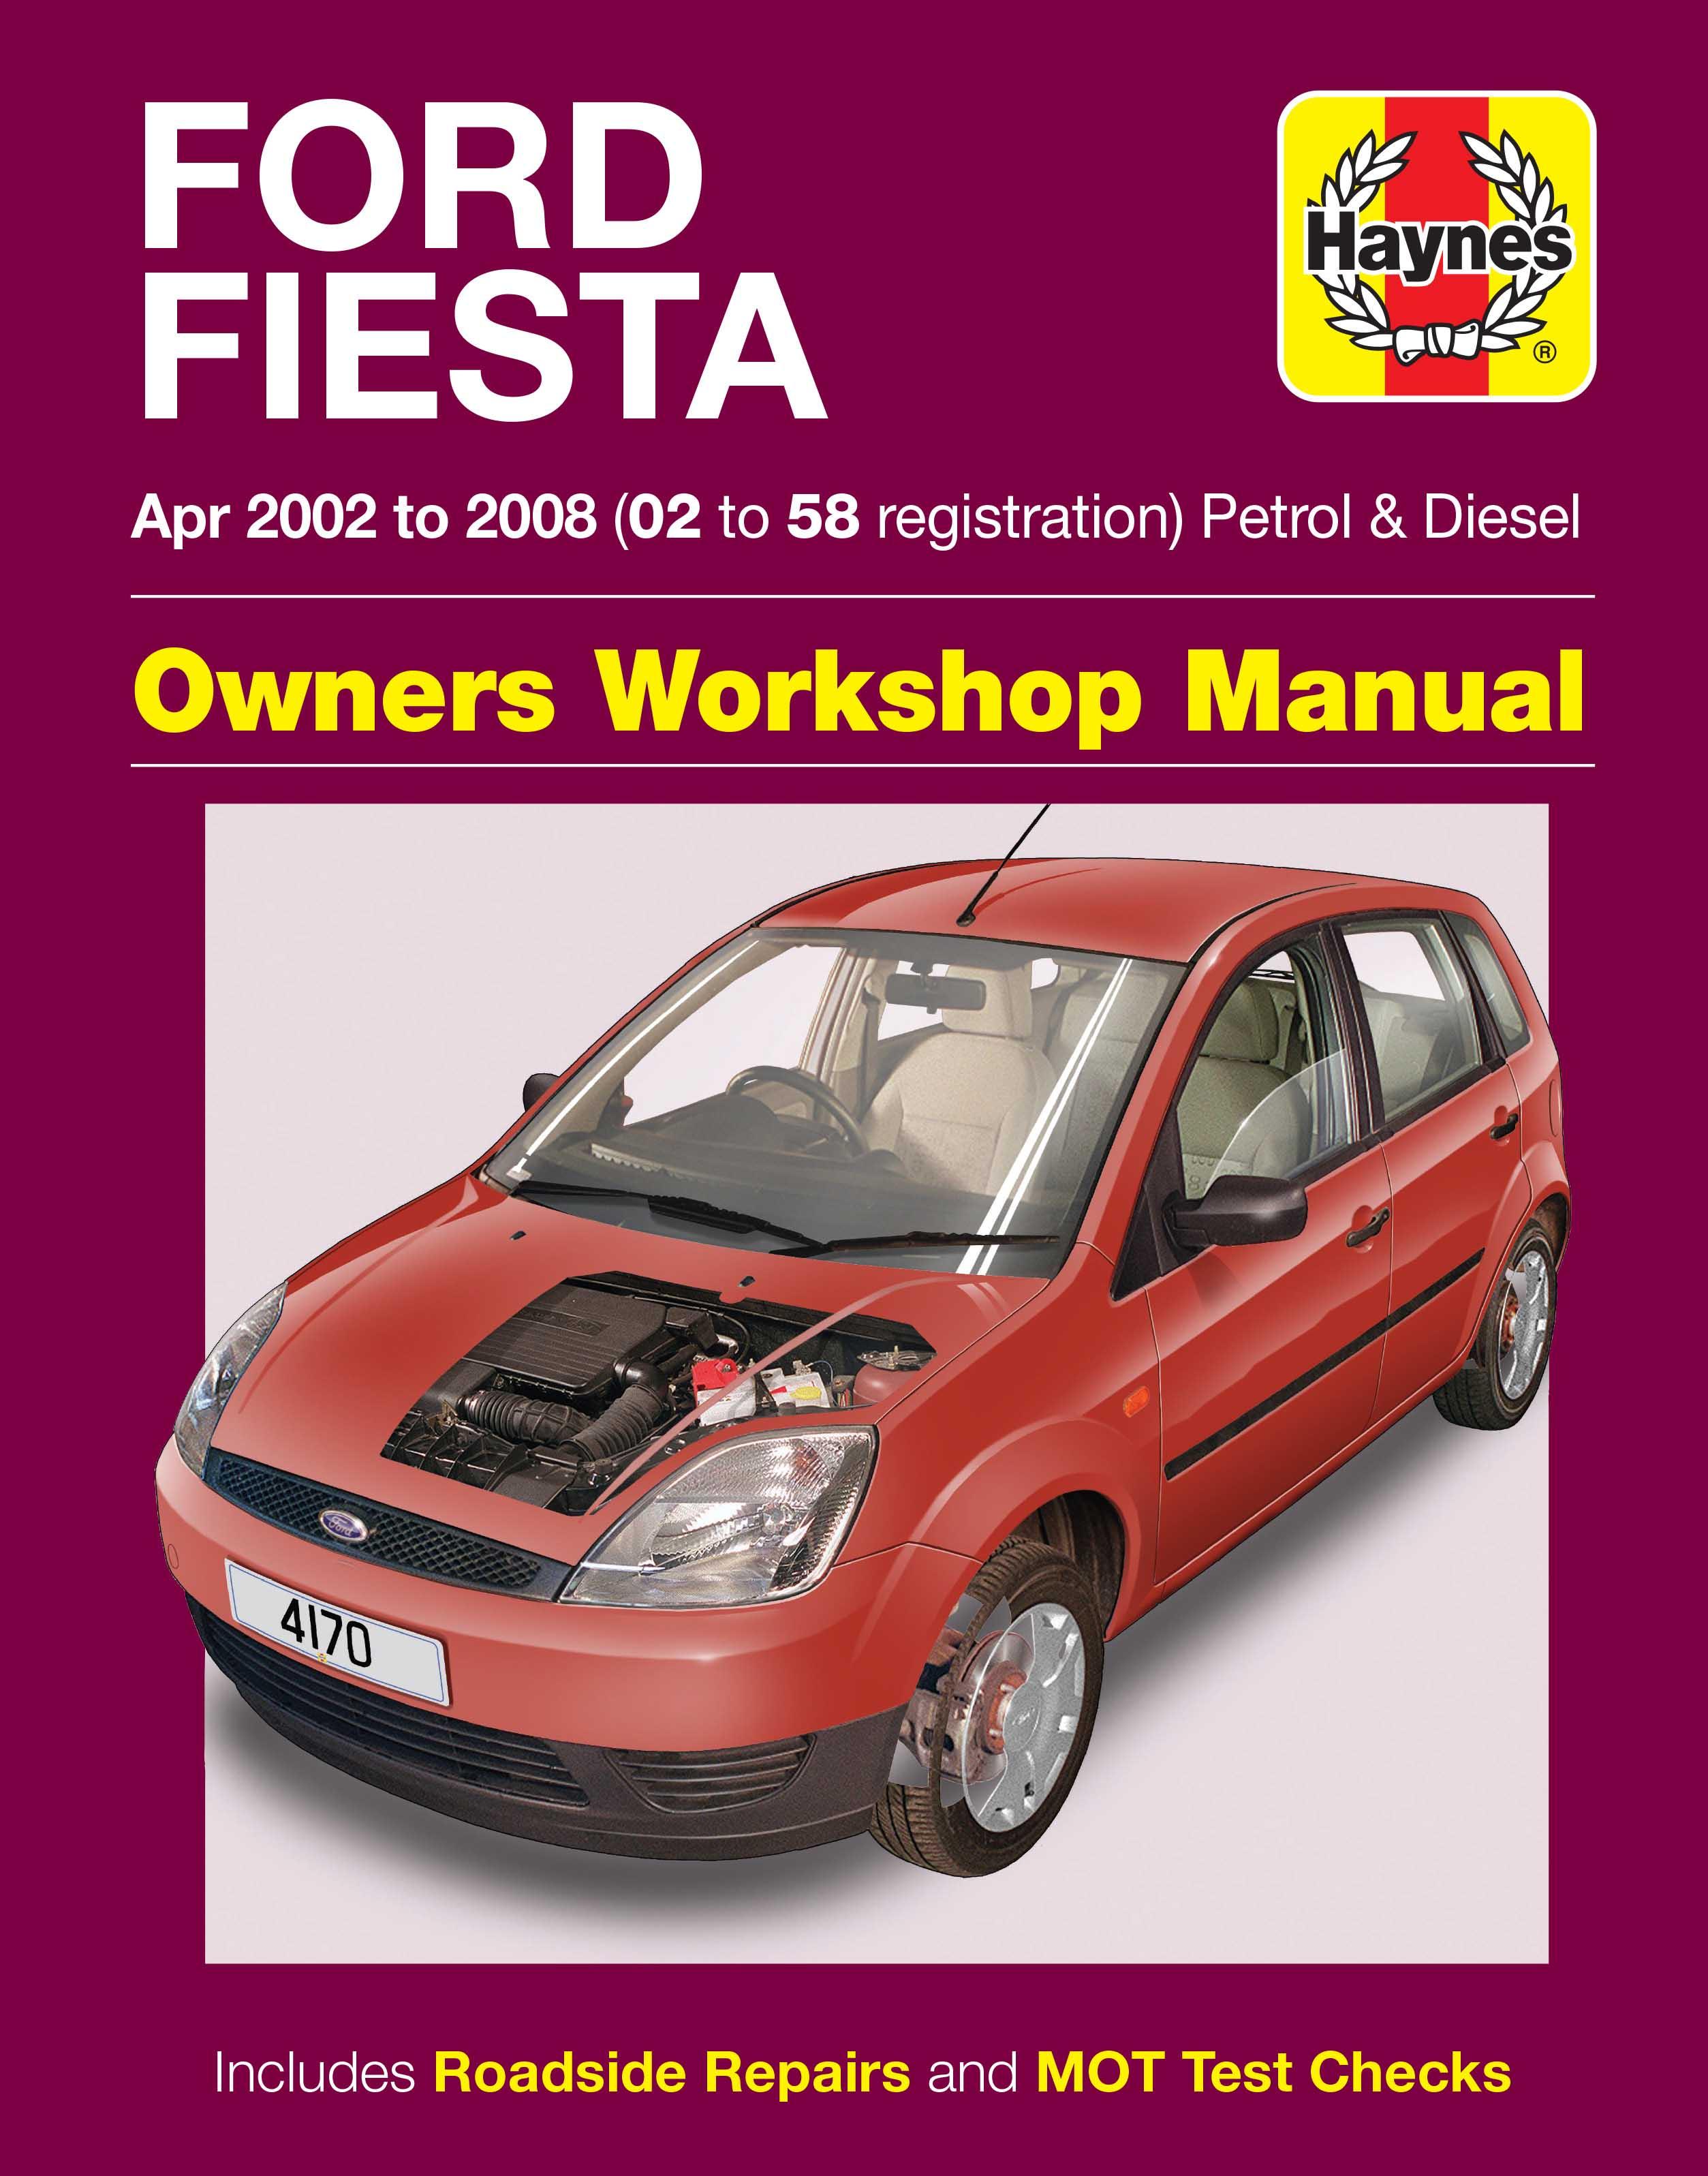 Hayn Ford Fiesta Pet&Diesel 02-04 4170